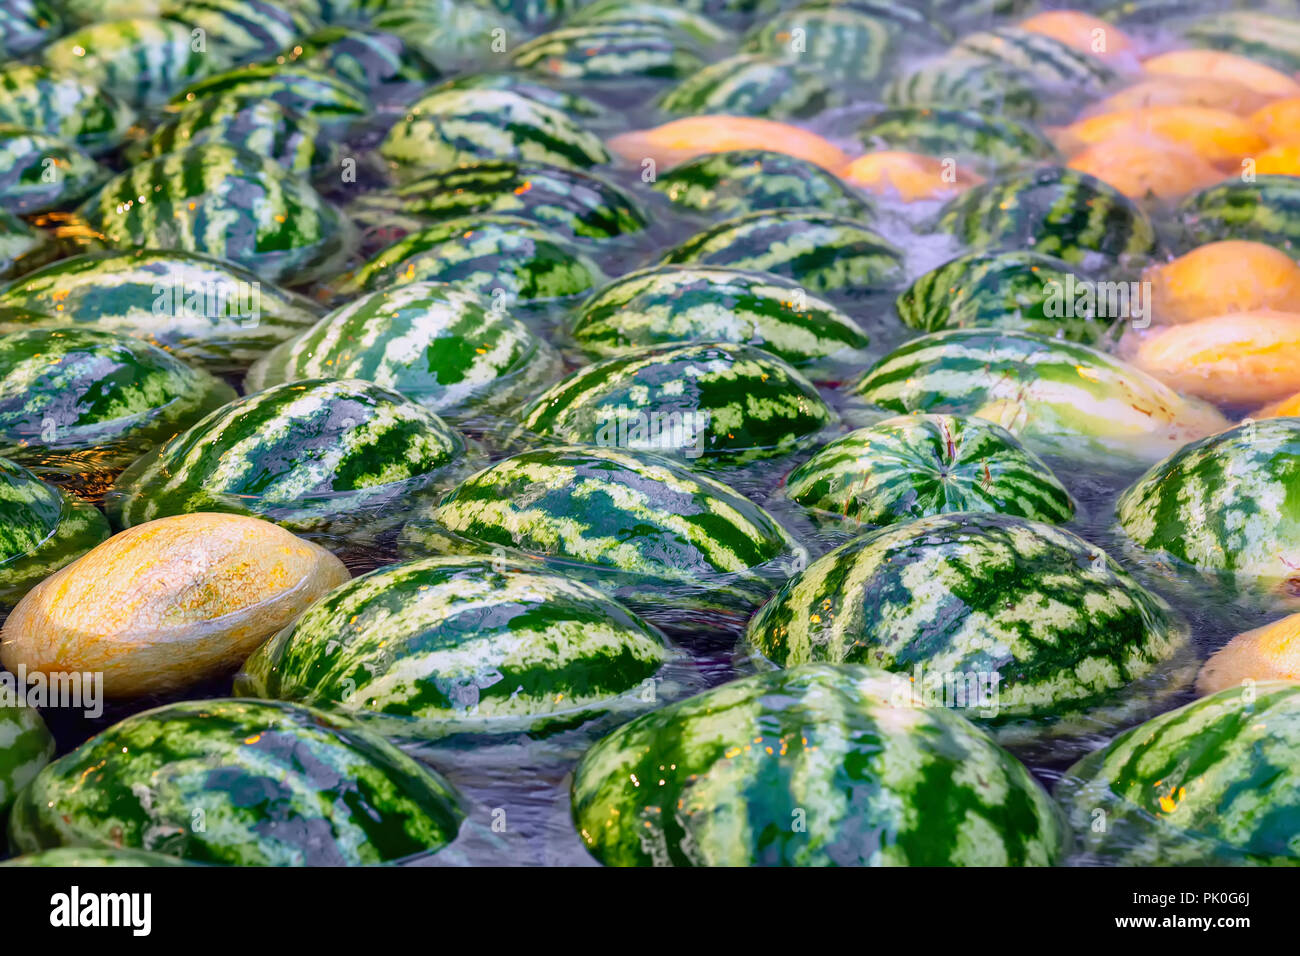 Natürliche große Ganze frische Wassermelonen floating und Kühlung im Wasser  Stockfotografie - Alamy